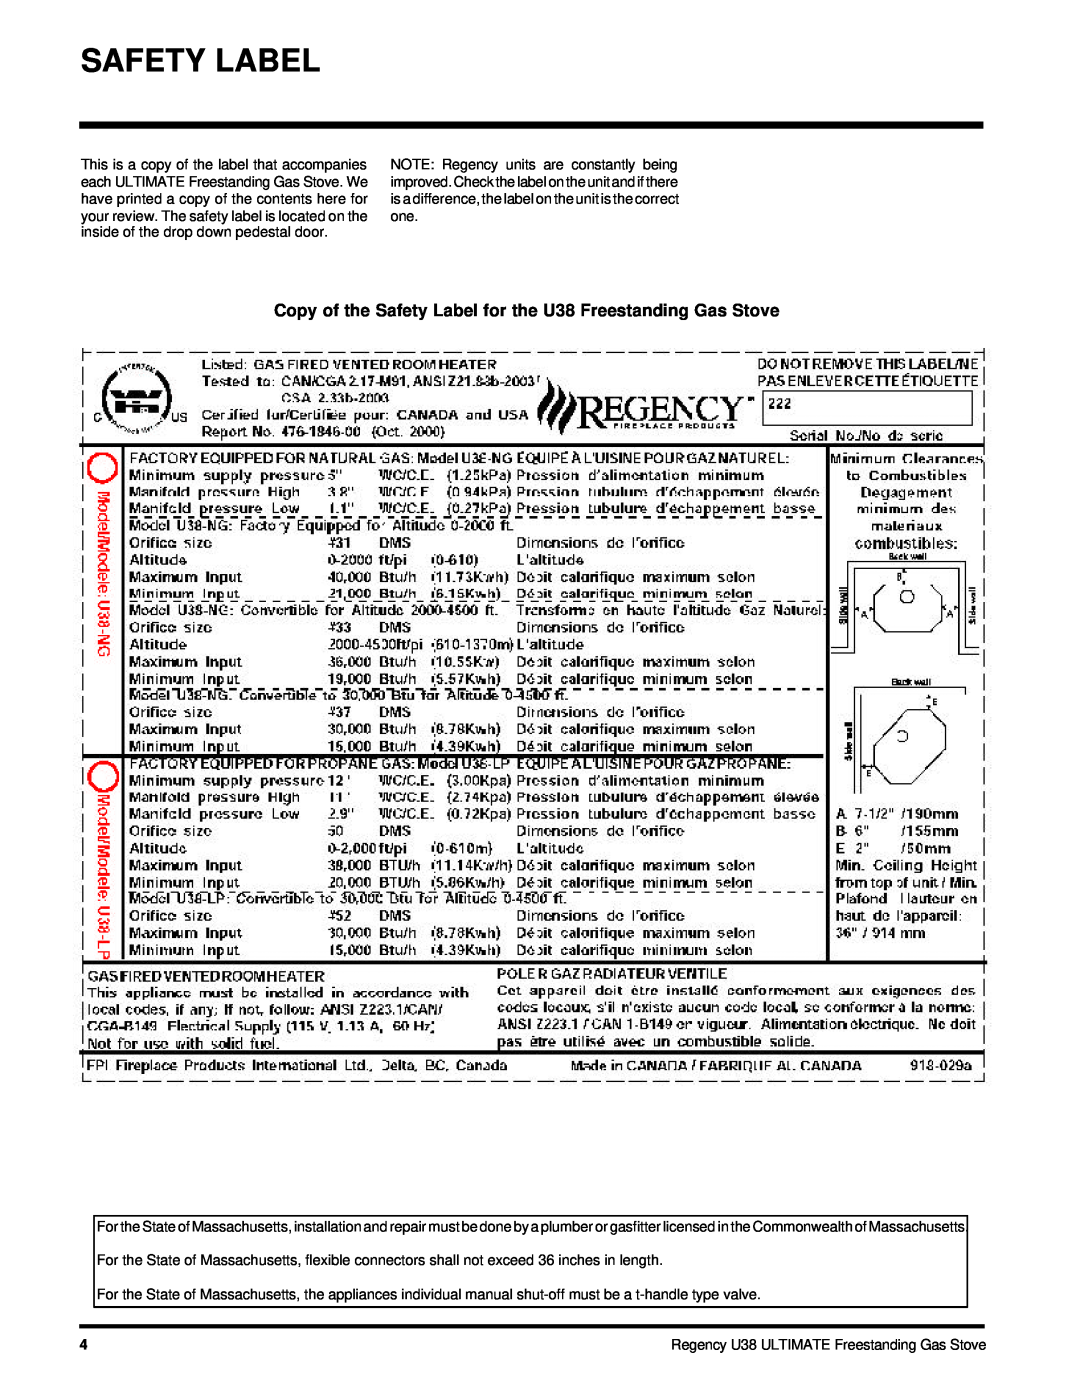 Regency U38-LP, U38-NG installation manual Safety Label, Regency U38 ULTIMATE Freestanding Gas Stove 